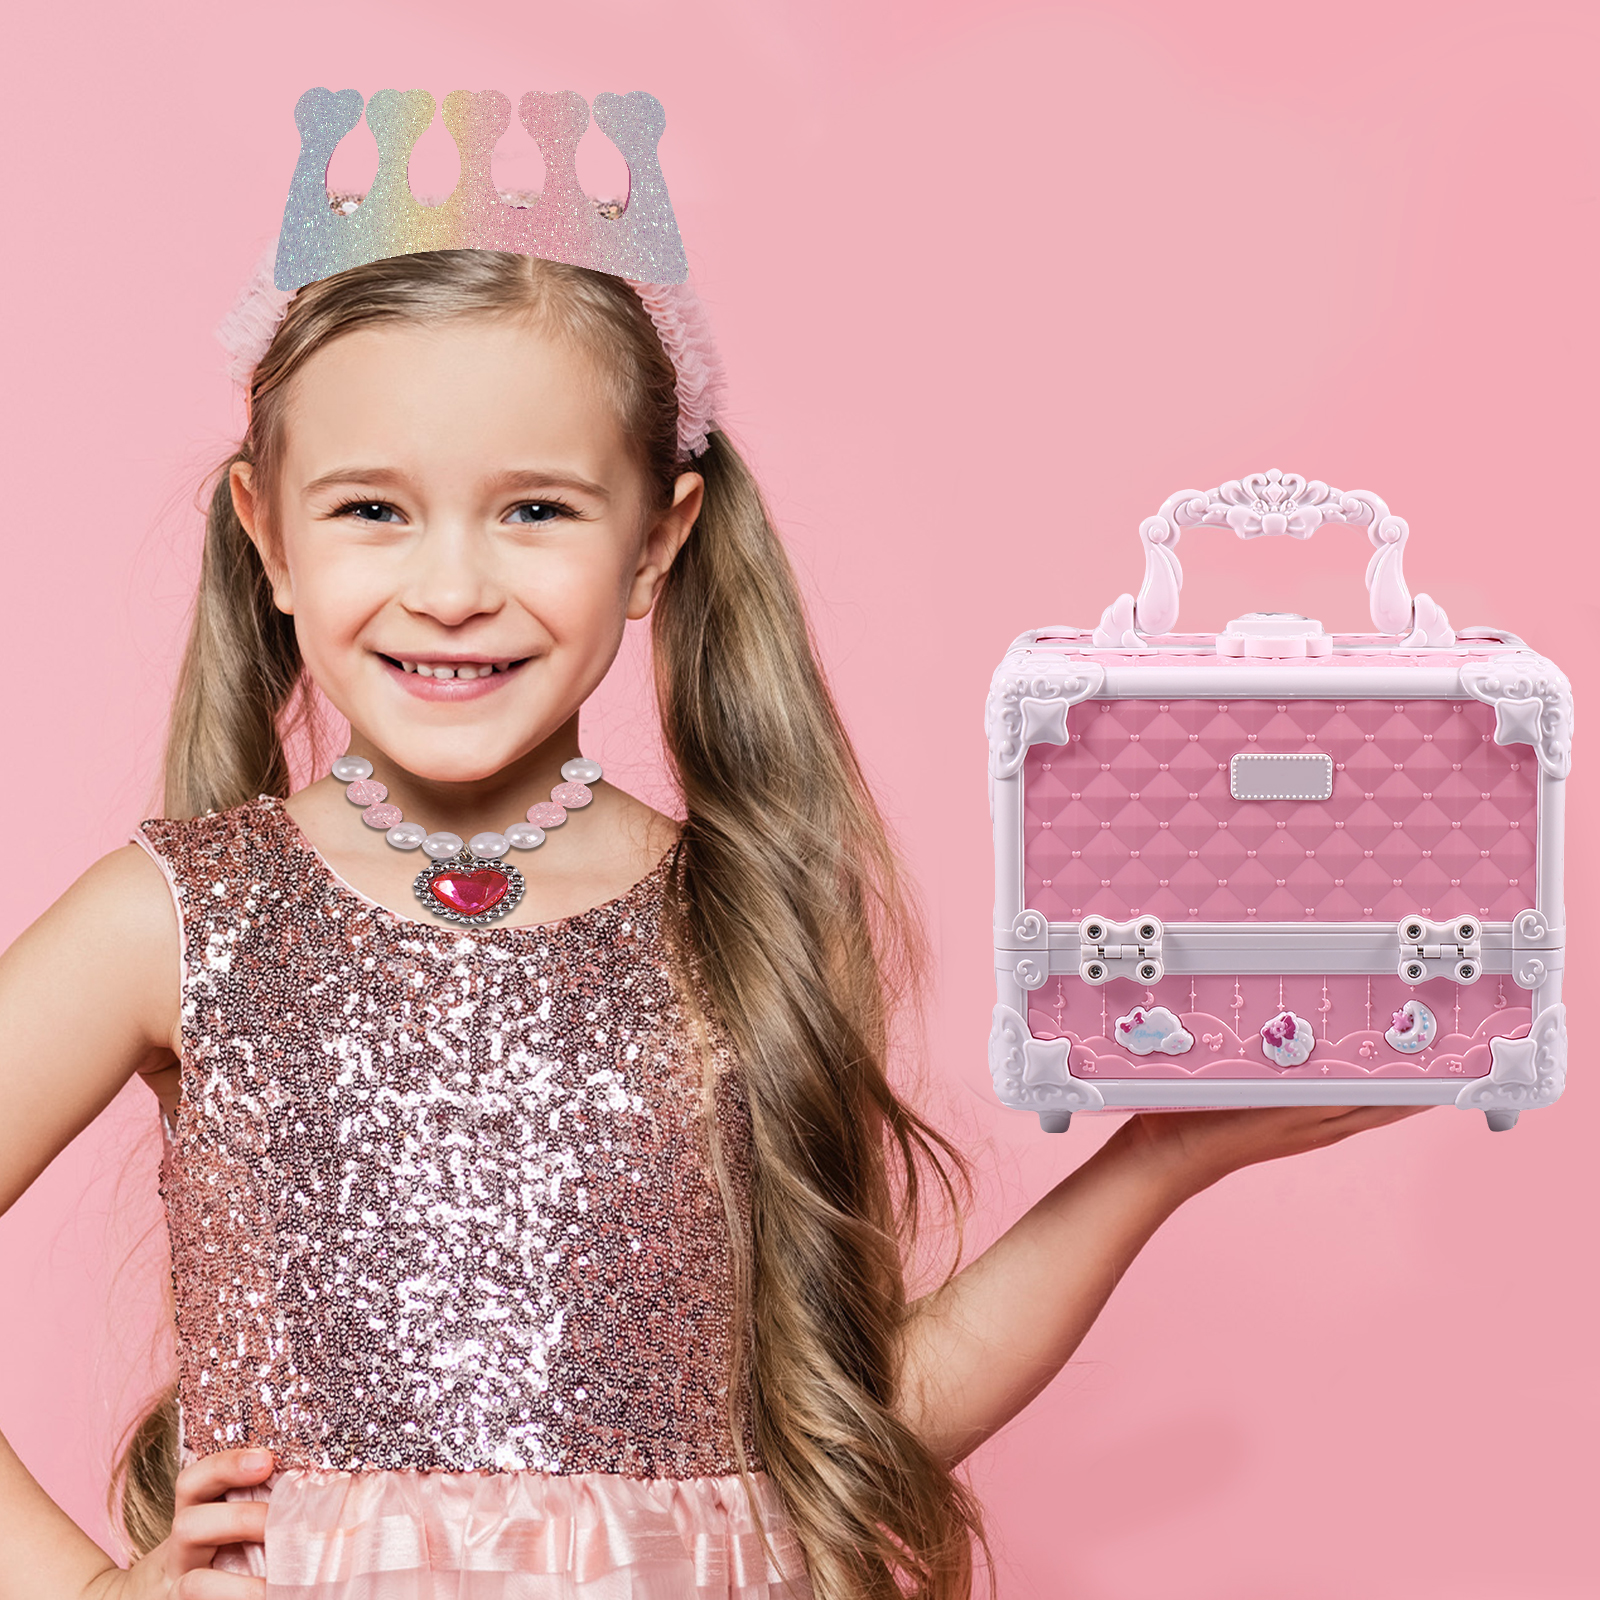 Miaoqian kit de maquiagem meninas criancas conjunto infantil princesa  cosmeticos atoxico brinquedo simulacao brin